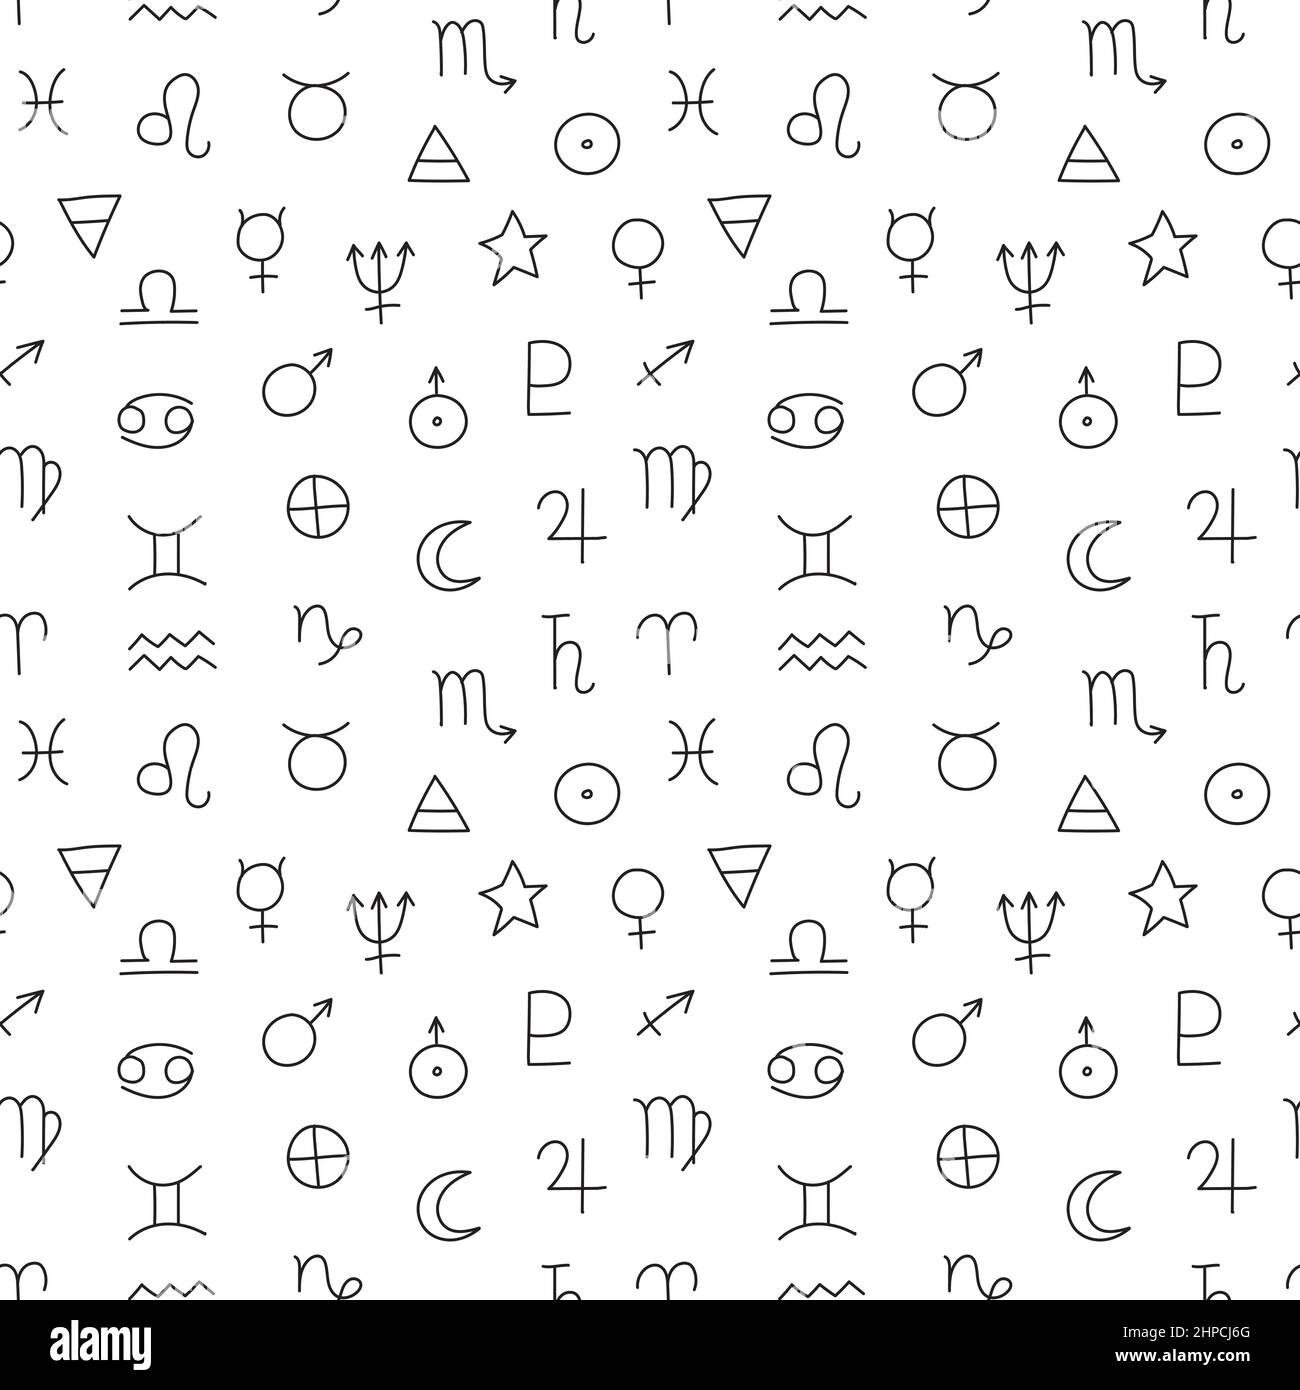 Segno zodiaco senza cuciture pattern. Simboli neri su sfondo bianco. Illustrazione Vettoriale